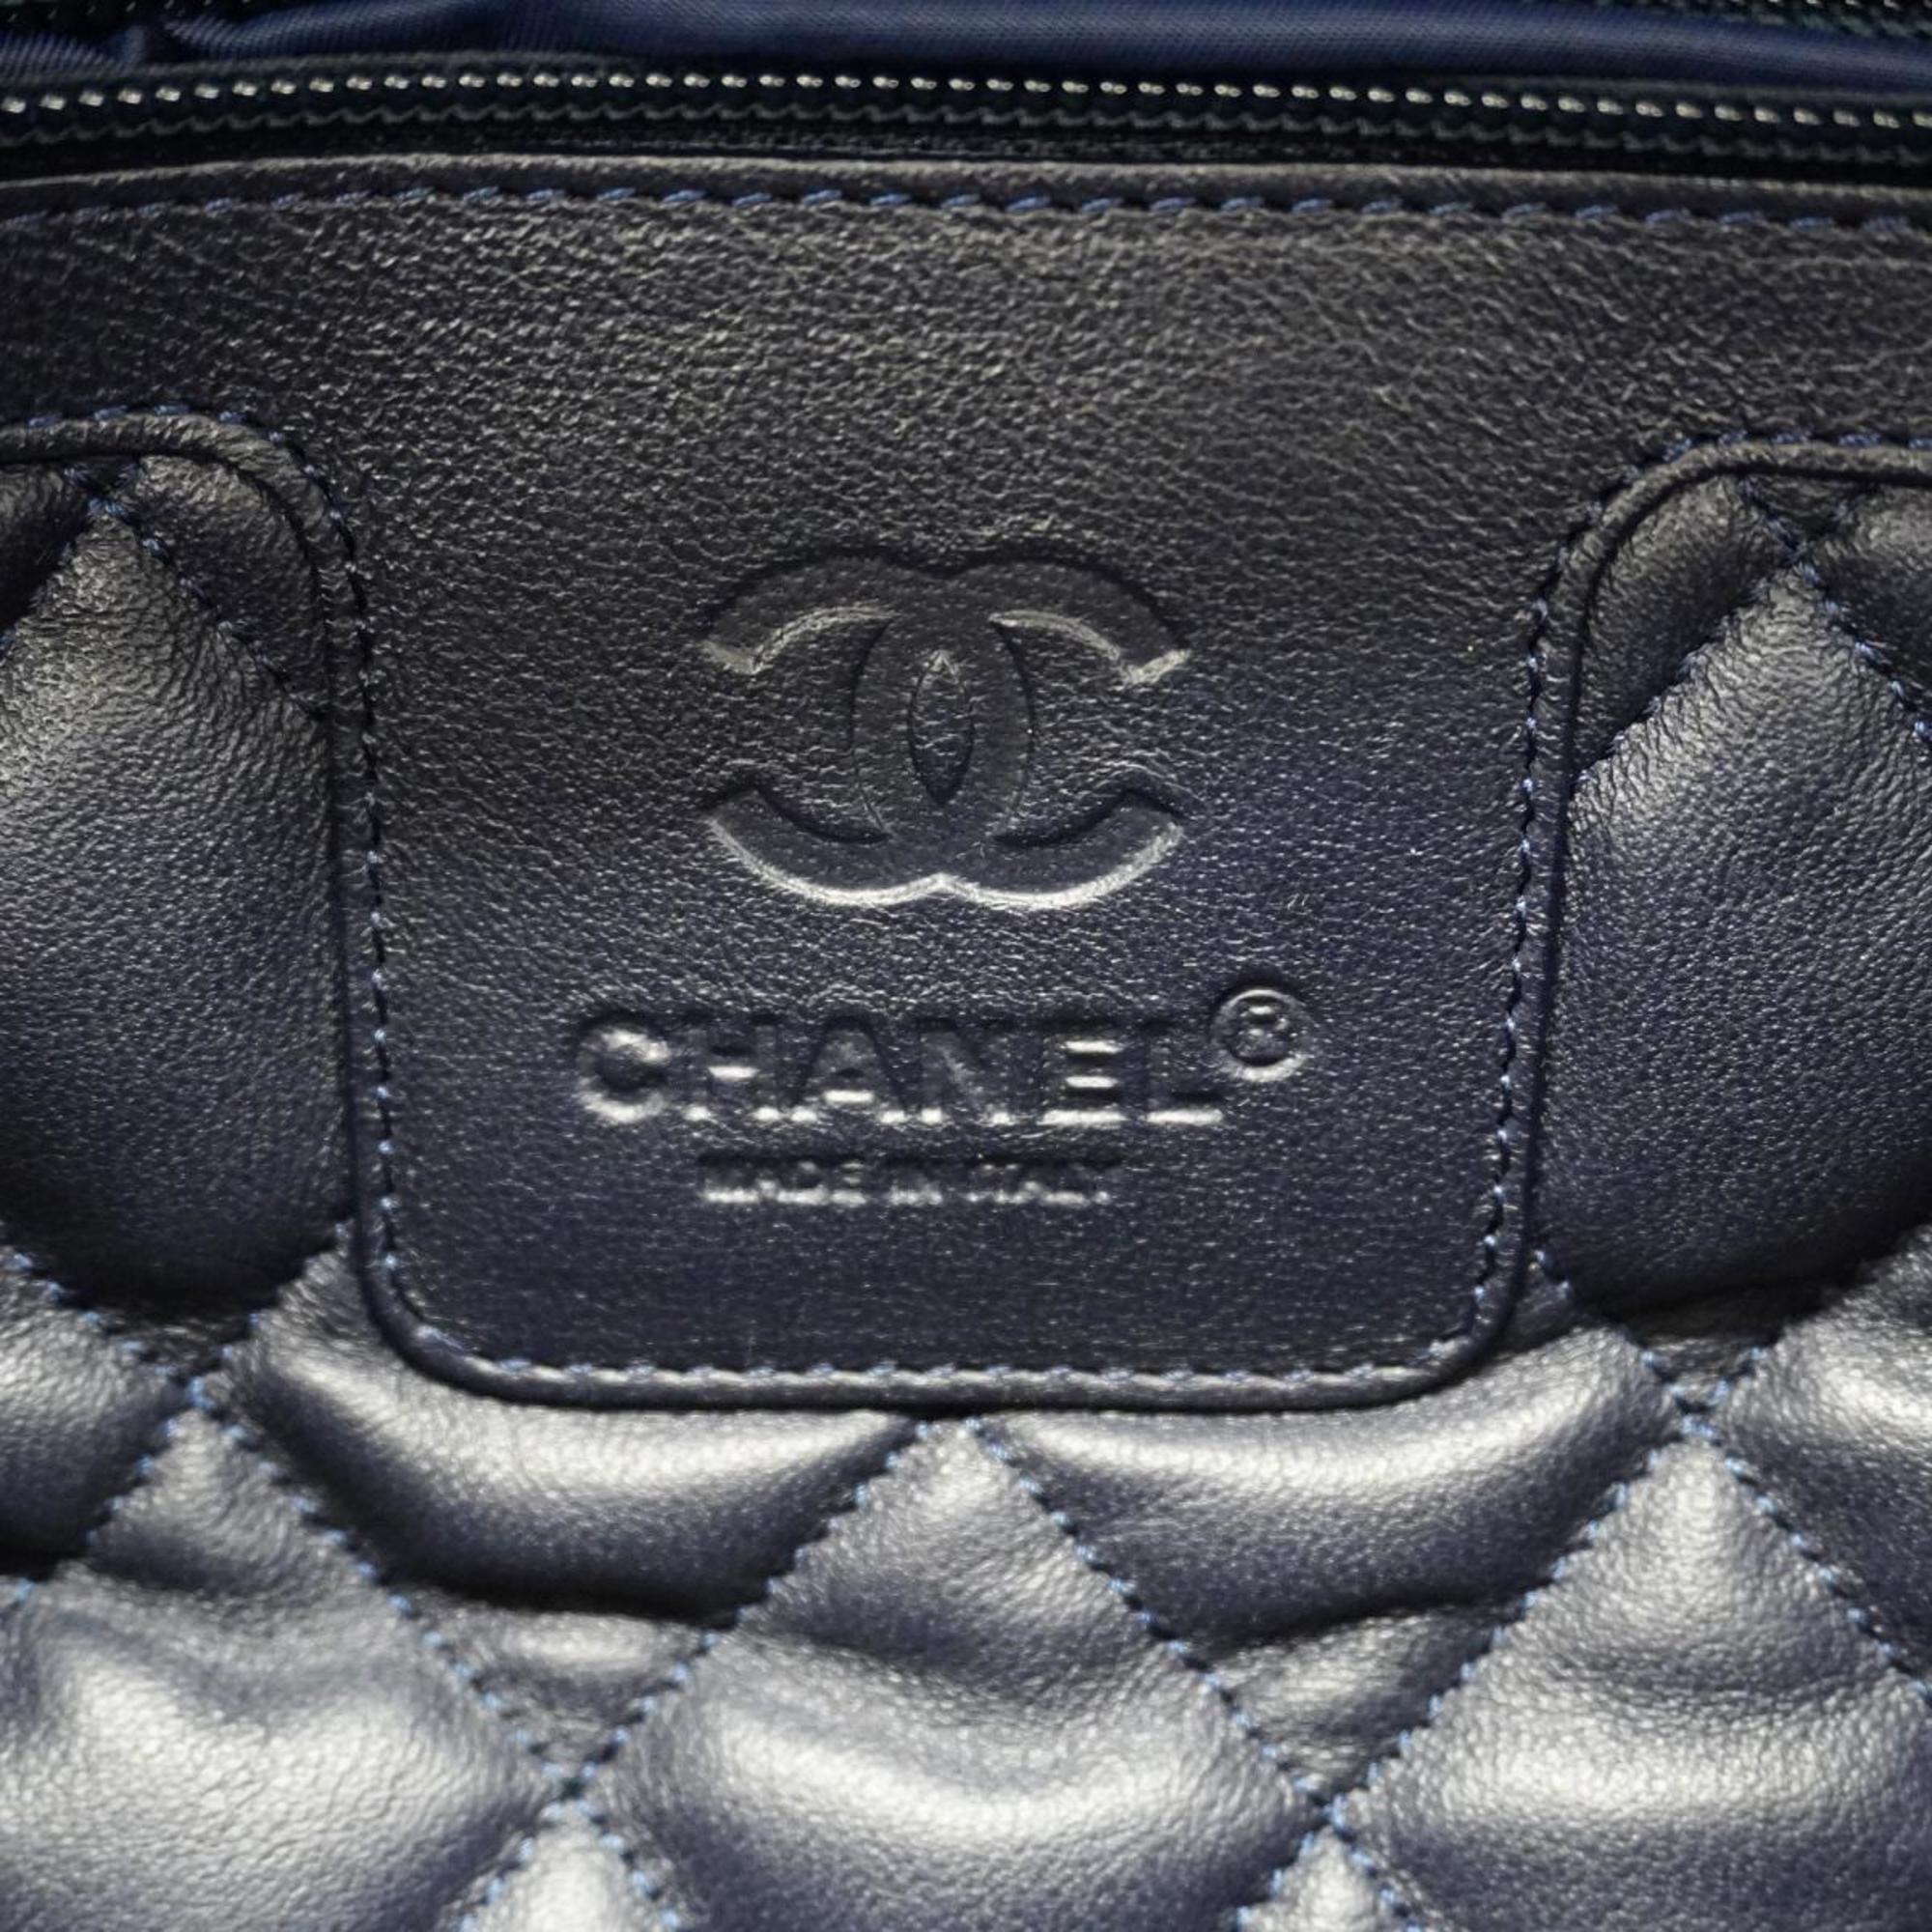 シャネル(Chanel) シャネル トートバッグ コココクーン レザー シルバー  レディース